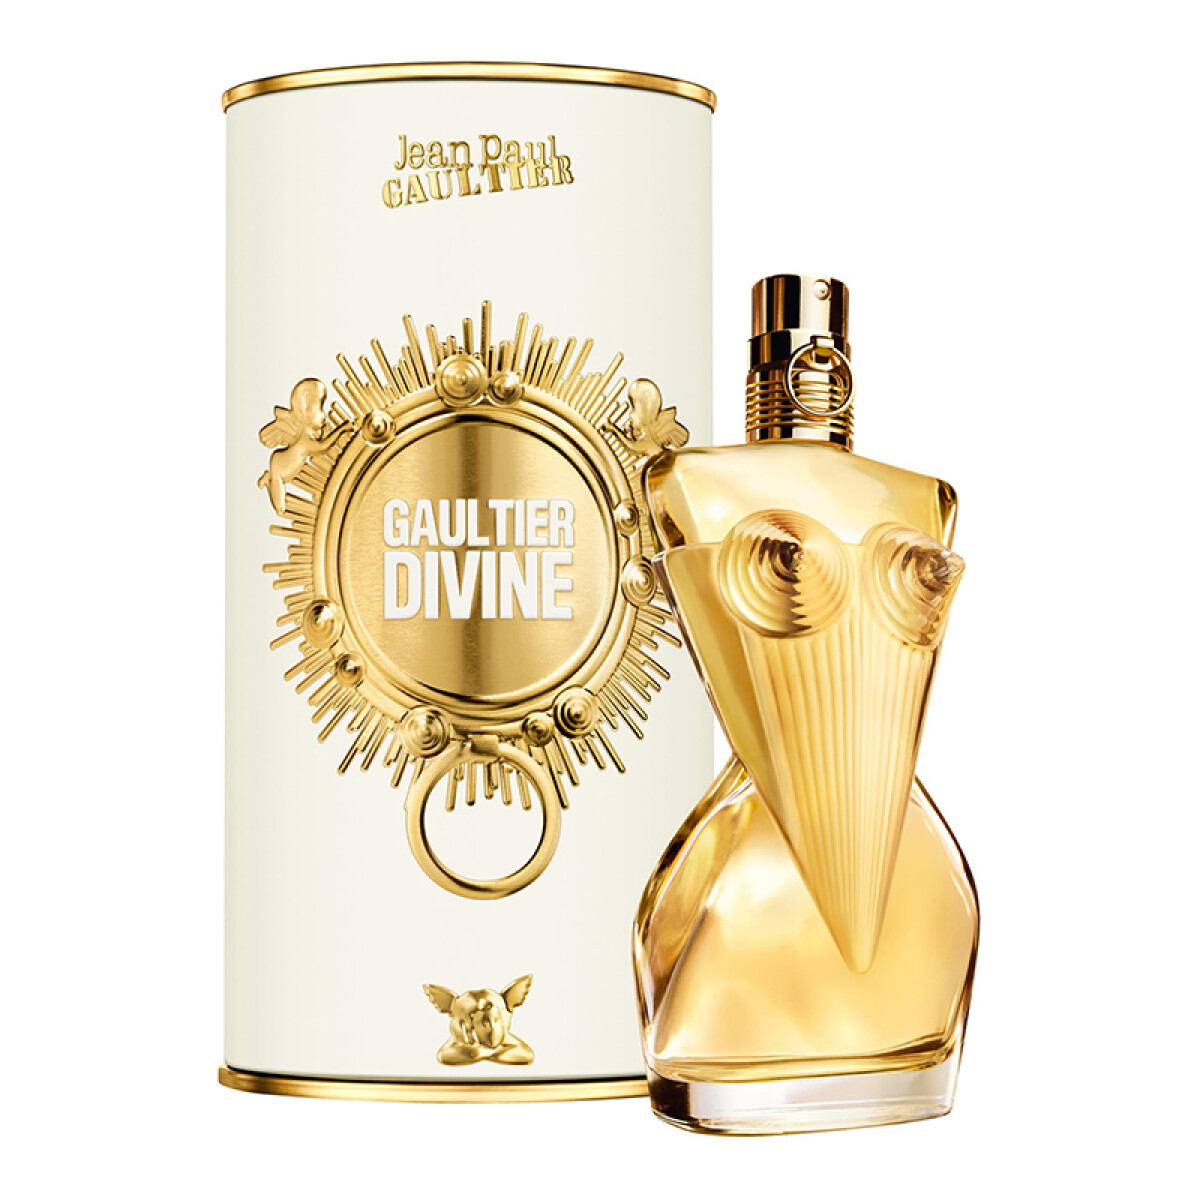 Jean Paul Gaultier Divine eau de parfum - 100 ml 